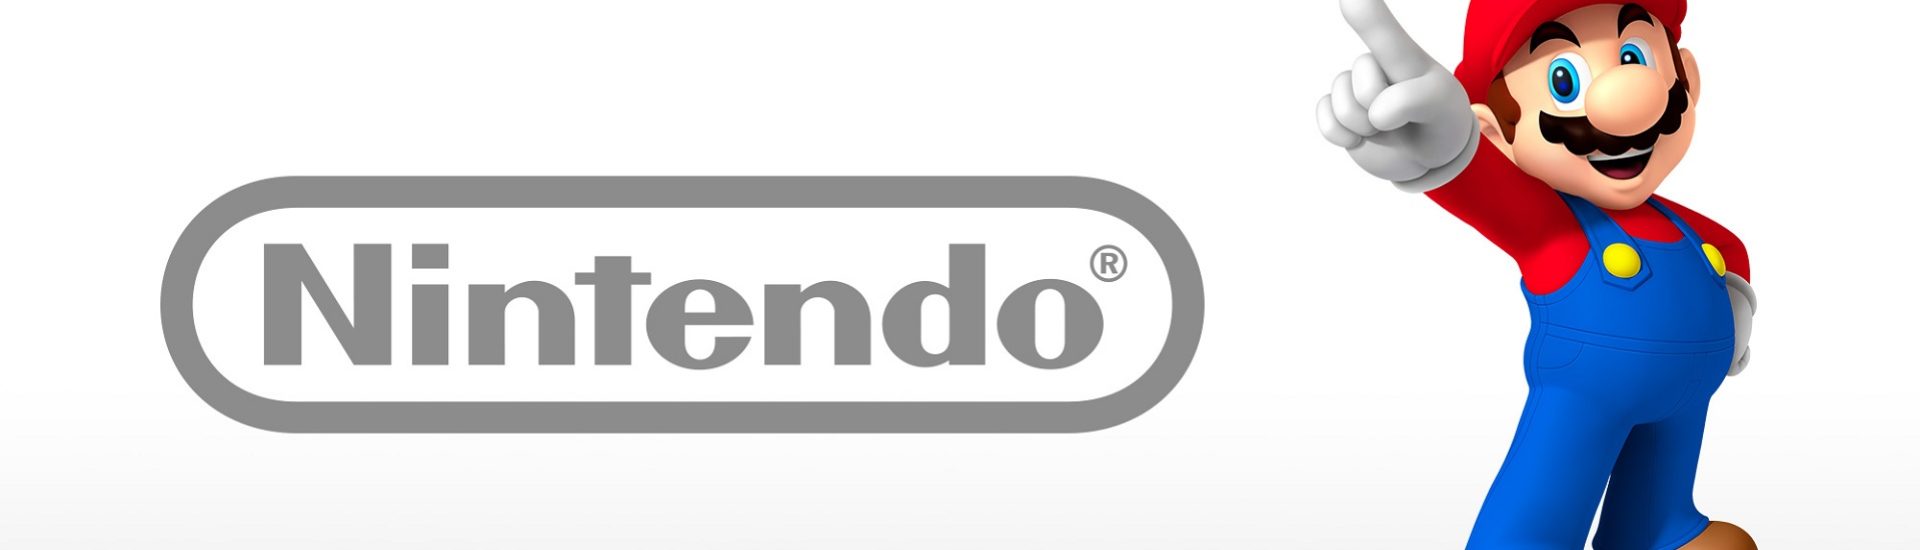 Nintendo plant zur E3 2021 eine große Direct